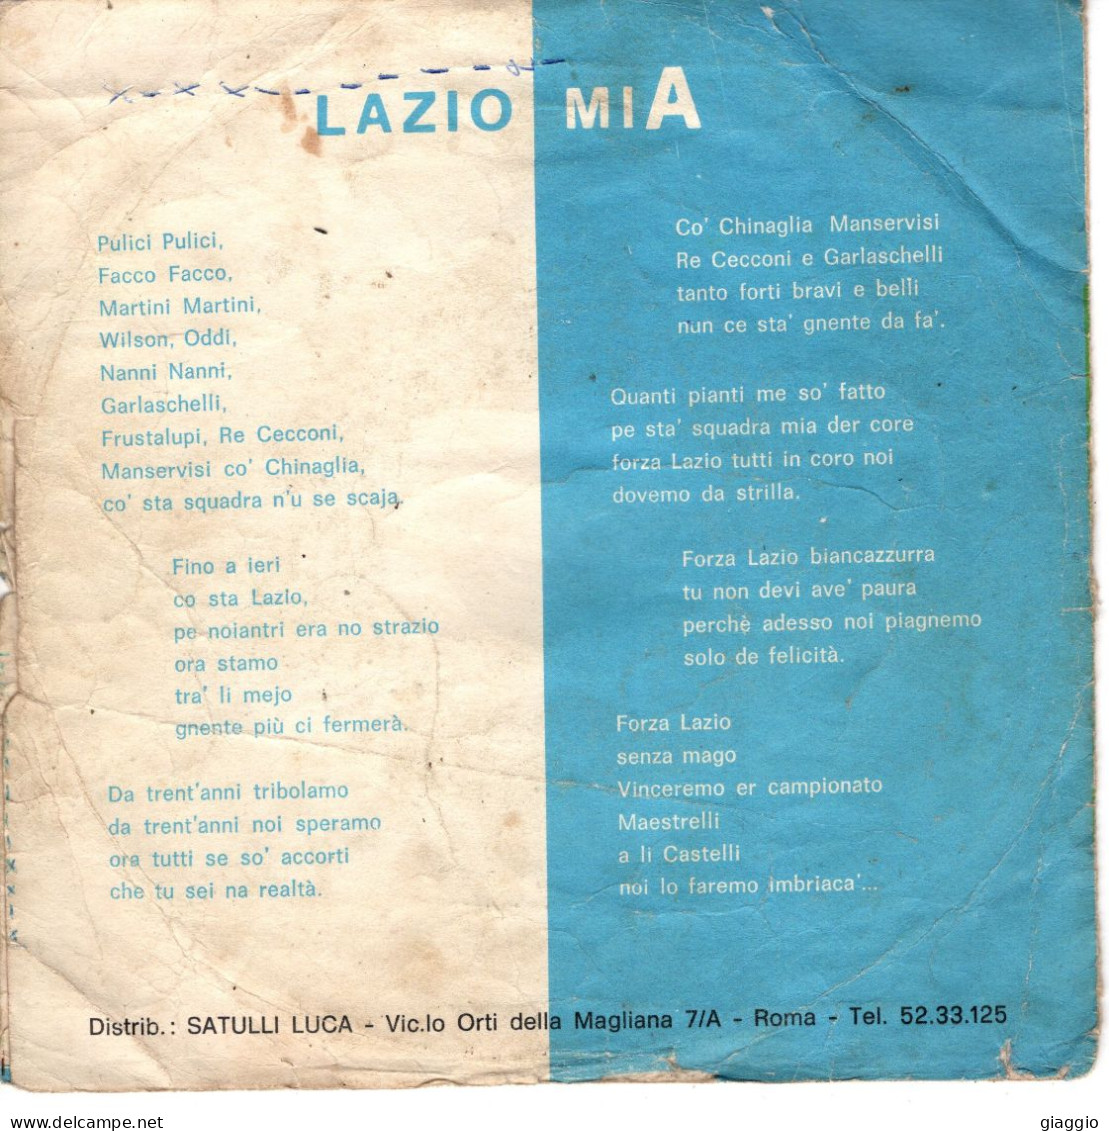 °°° 587) 45 GIRI - S. SILVESTRI - LAZIO MIA / INNO DI MAMELI °°° - Other - Italian Music